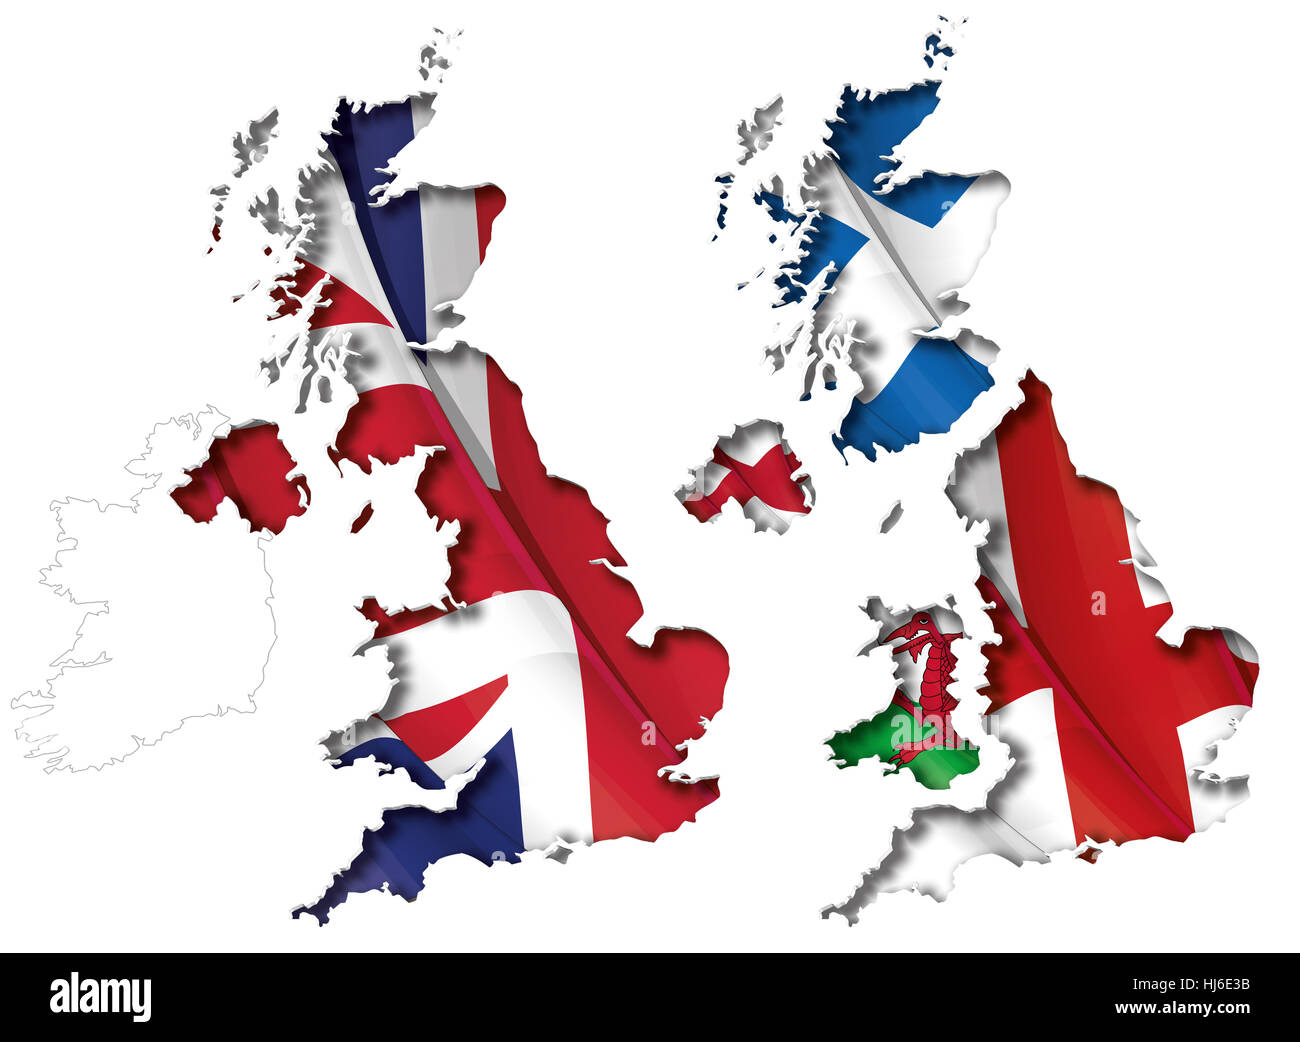 Angleterre, Ecosse, Grande-Bretagne, cut out, Pays de Galles, carte, atlas, carte du monde, coupé Banque D'Images